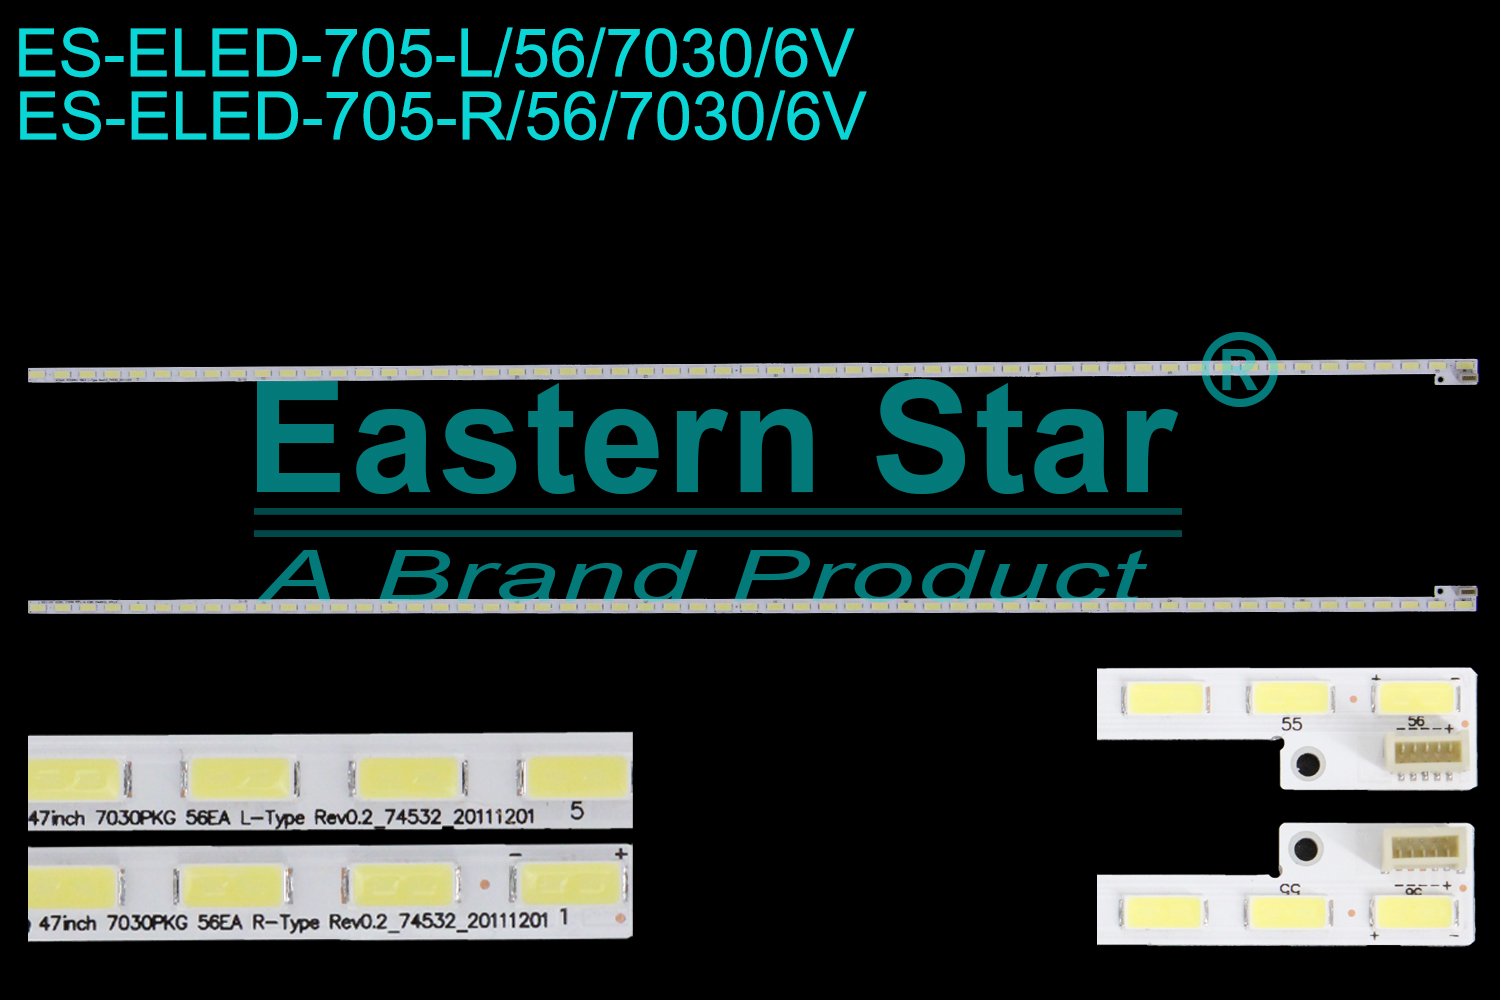 ES-ELED-705 ELED/EDGE TV backlight use for 47''  Lg 47inch 7030PKG 56EA L-Type Rev0.2_74532,  47inch 7030PKG 56EA R-Type Rev0.2_74532 LED STRIPS(2)